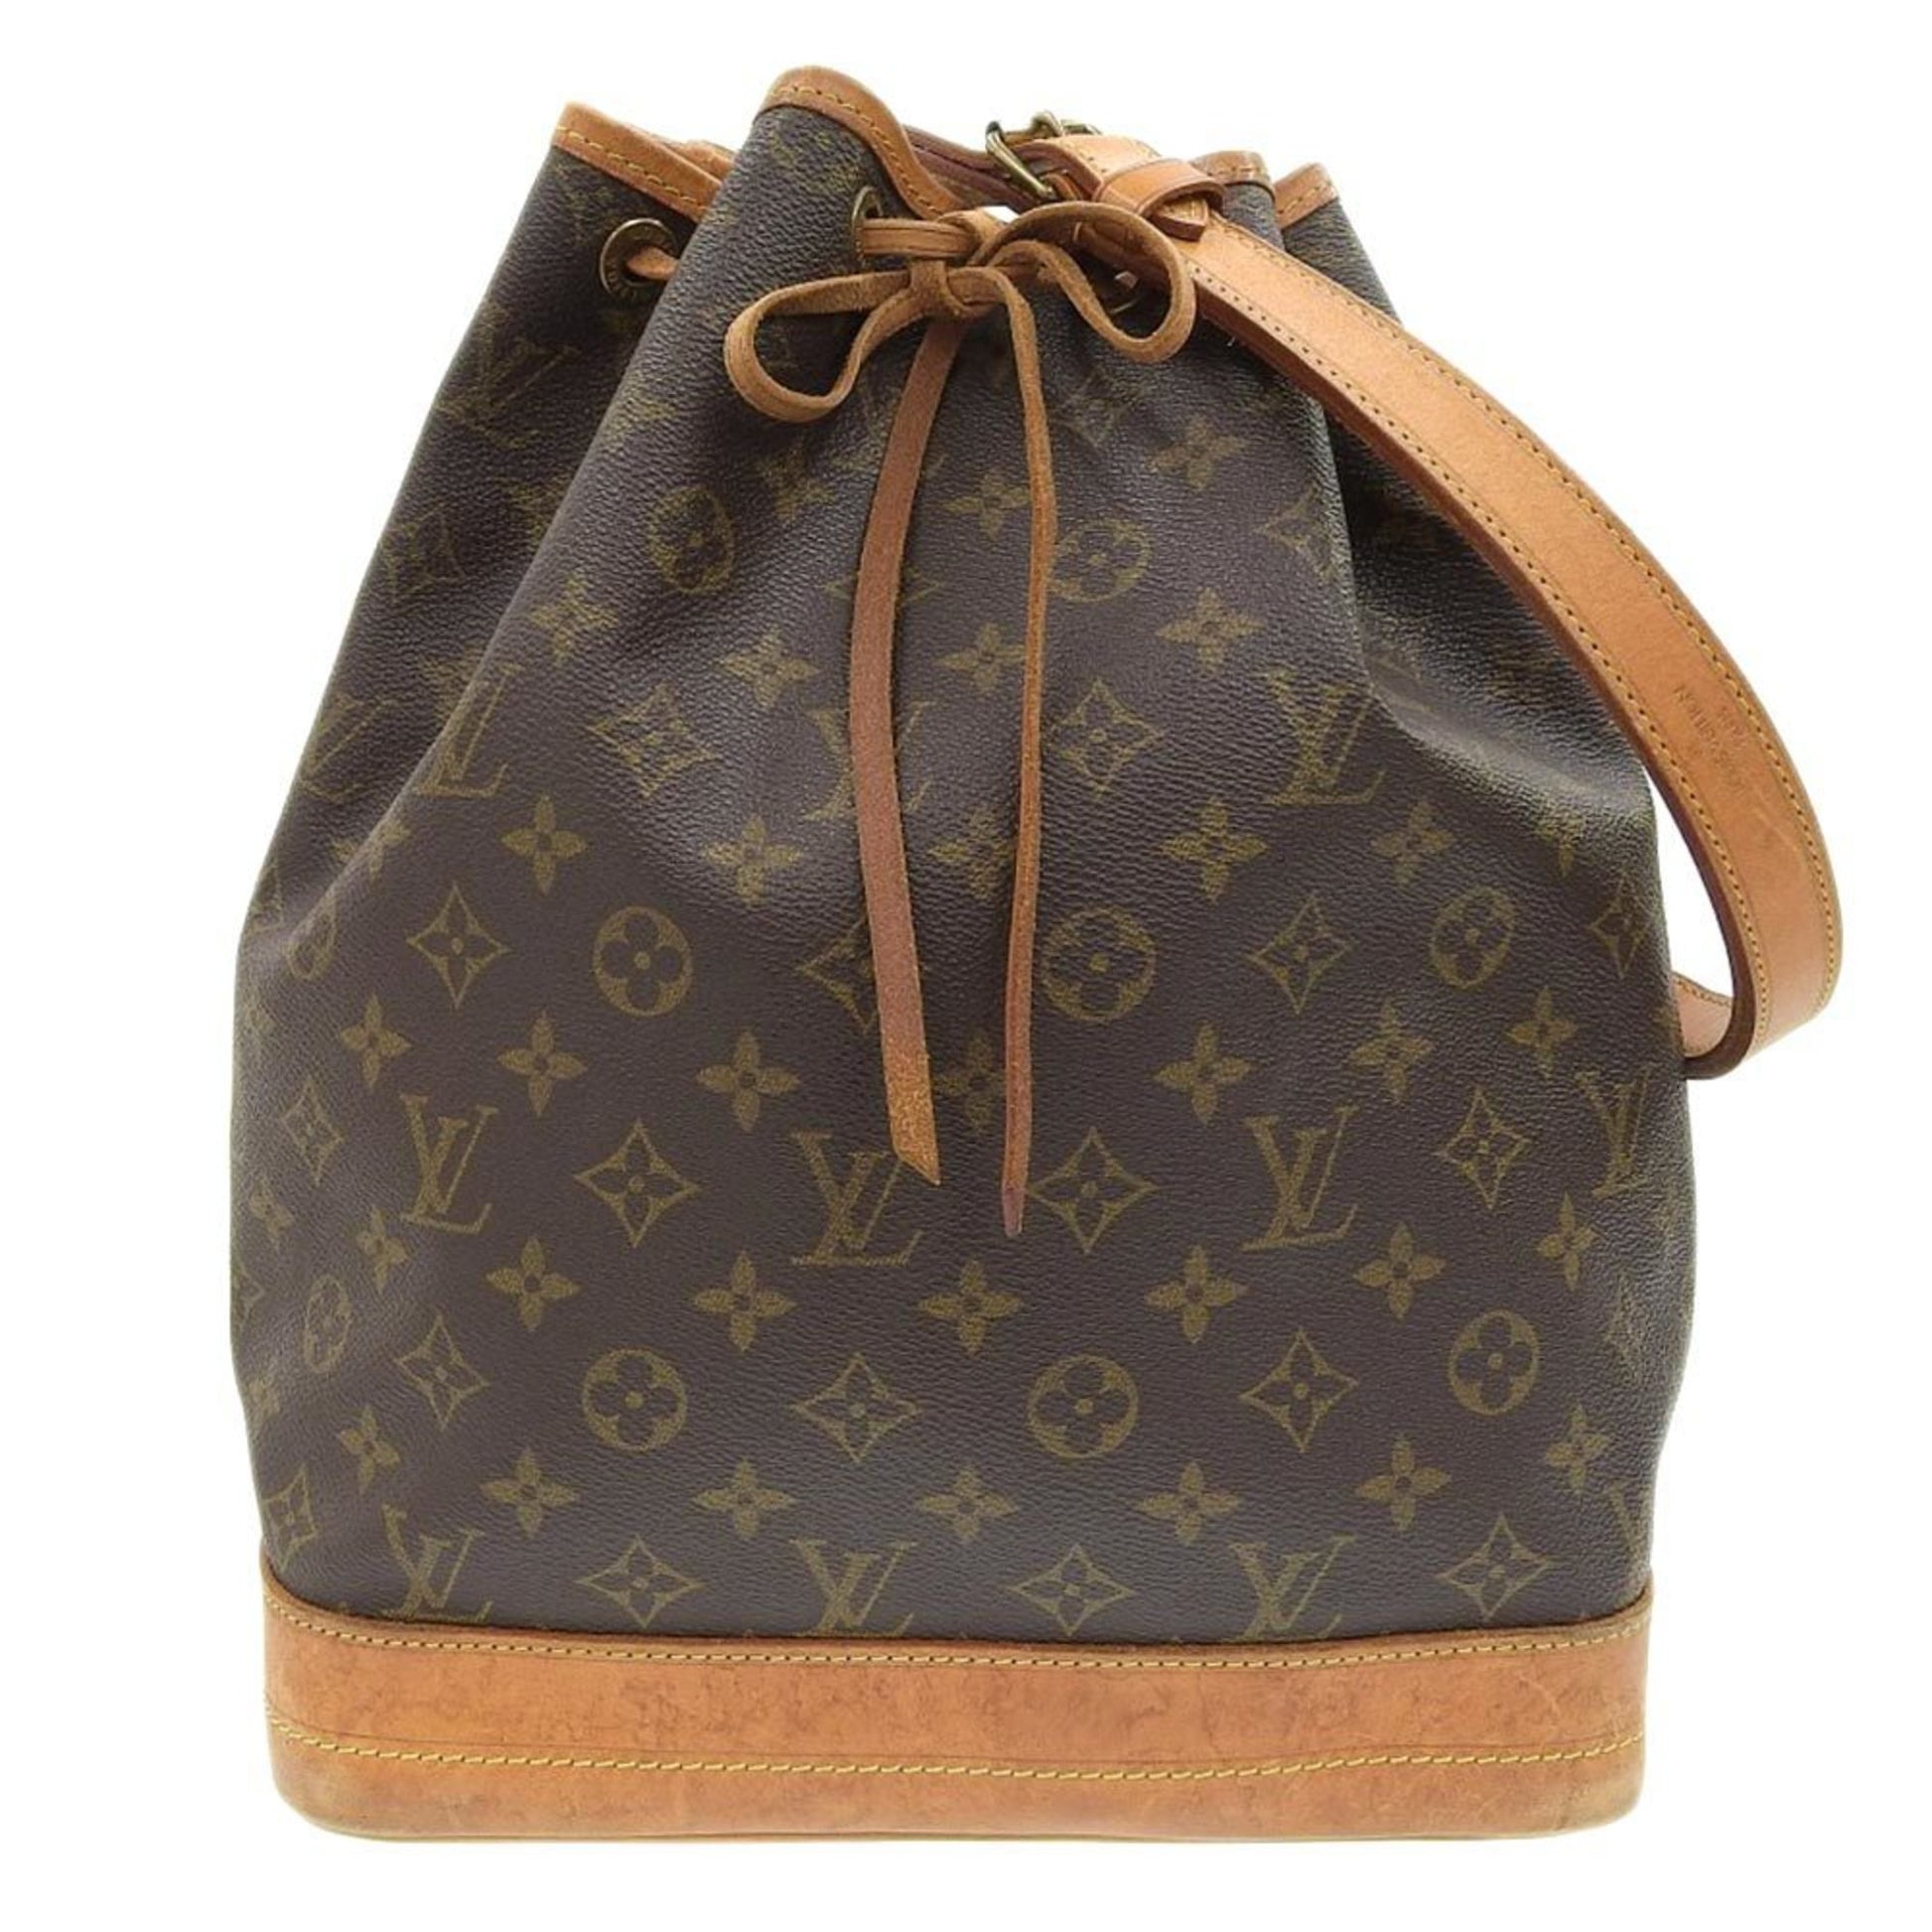 Vintage Louis Vuitton Noe Monogram Drawstring Bucket Bag